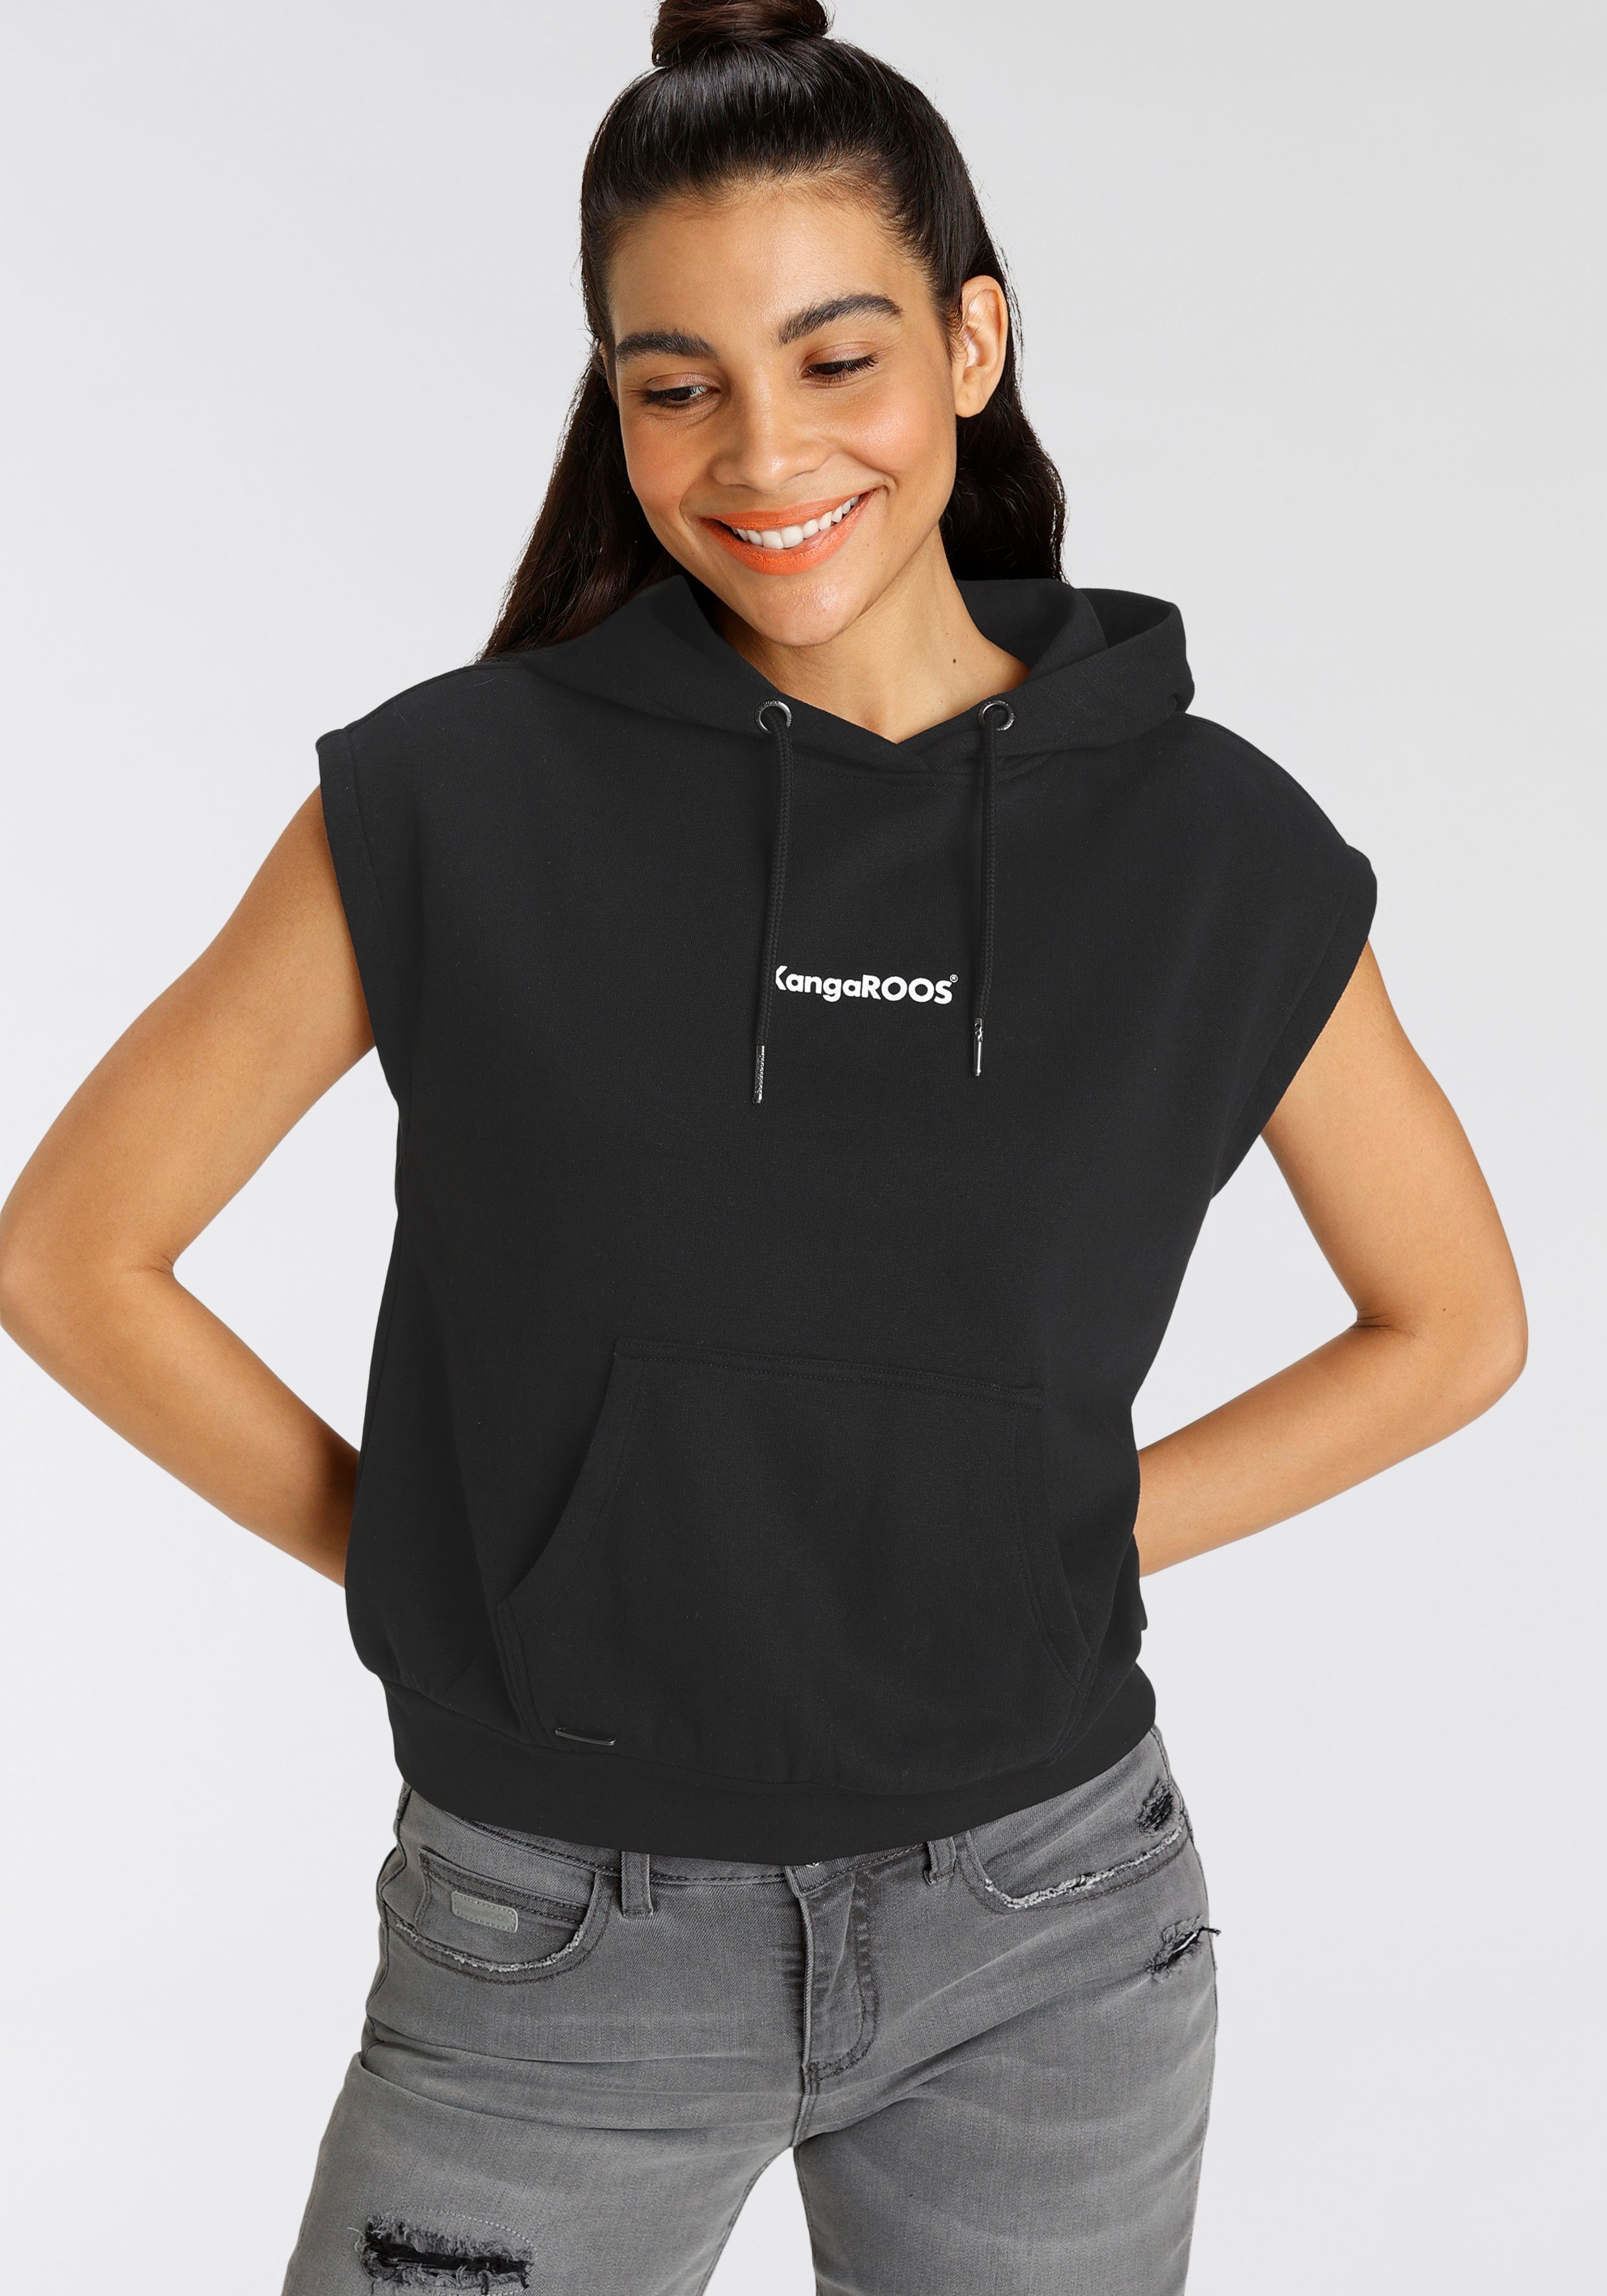 KangaROOS Sweatshirt mit kleinen Markenschriftzug NEUE - und Kapuze KOLLEKTION